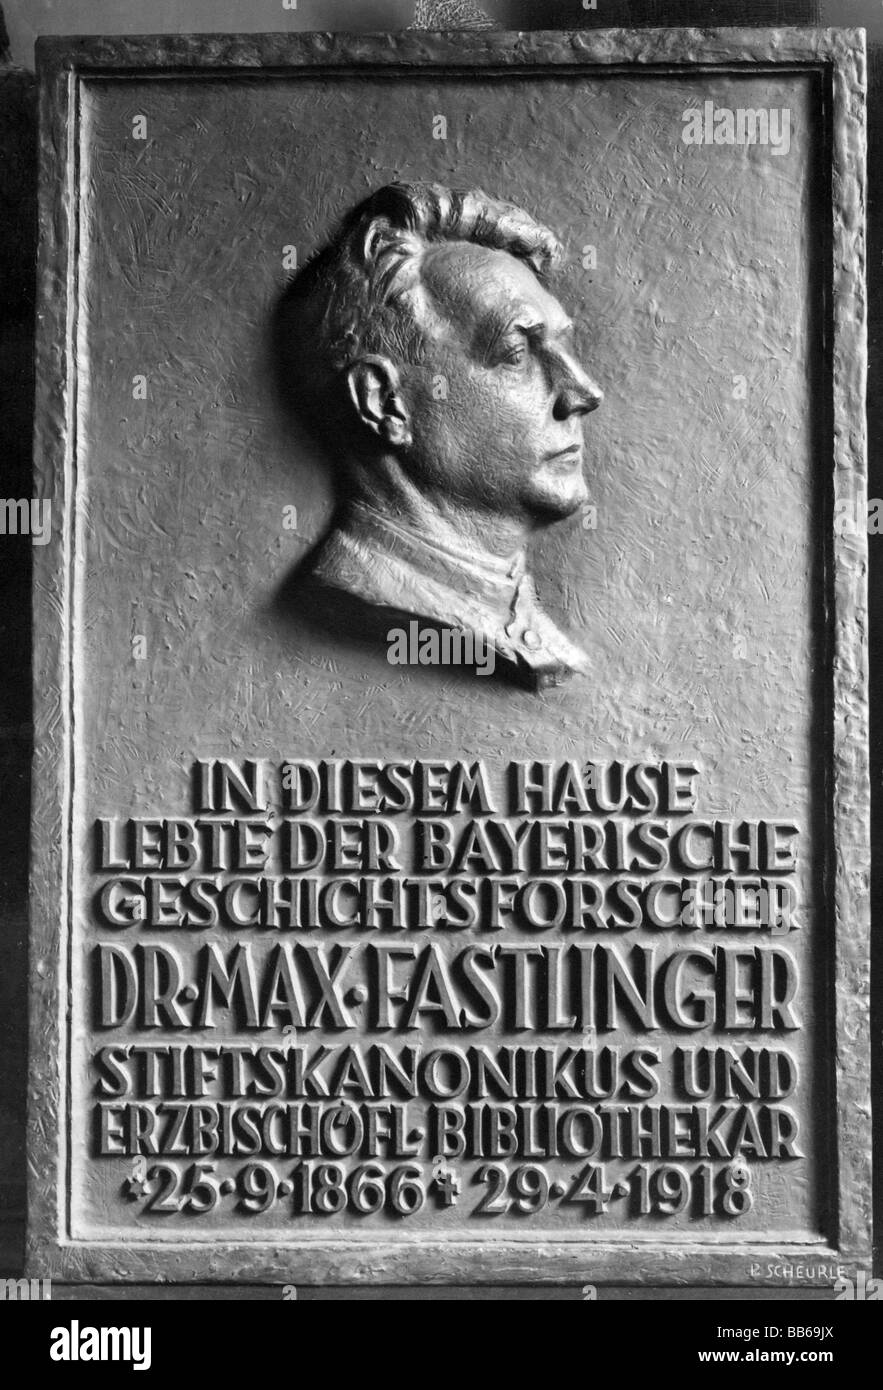 Fastlinger, Max, 25.9.1866 - 29.4.1918, storico bavarese, ritratto, vista laterale, lapide commemorativa, , Foto Stock